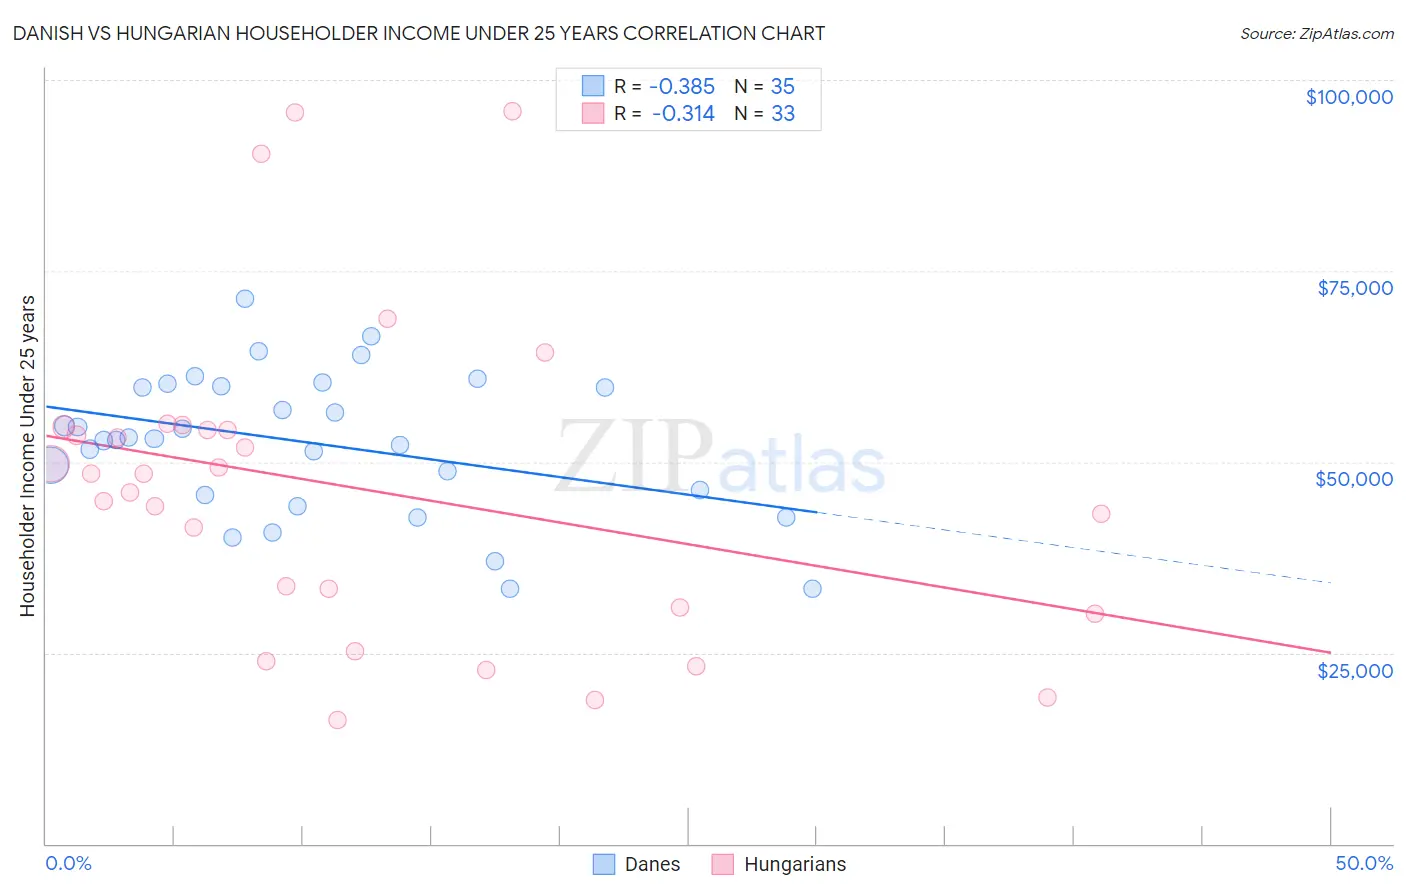 Danish vs Hungarian Householder Income Under 25 years